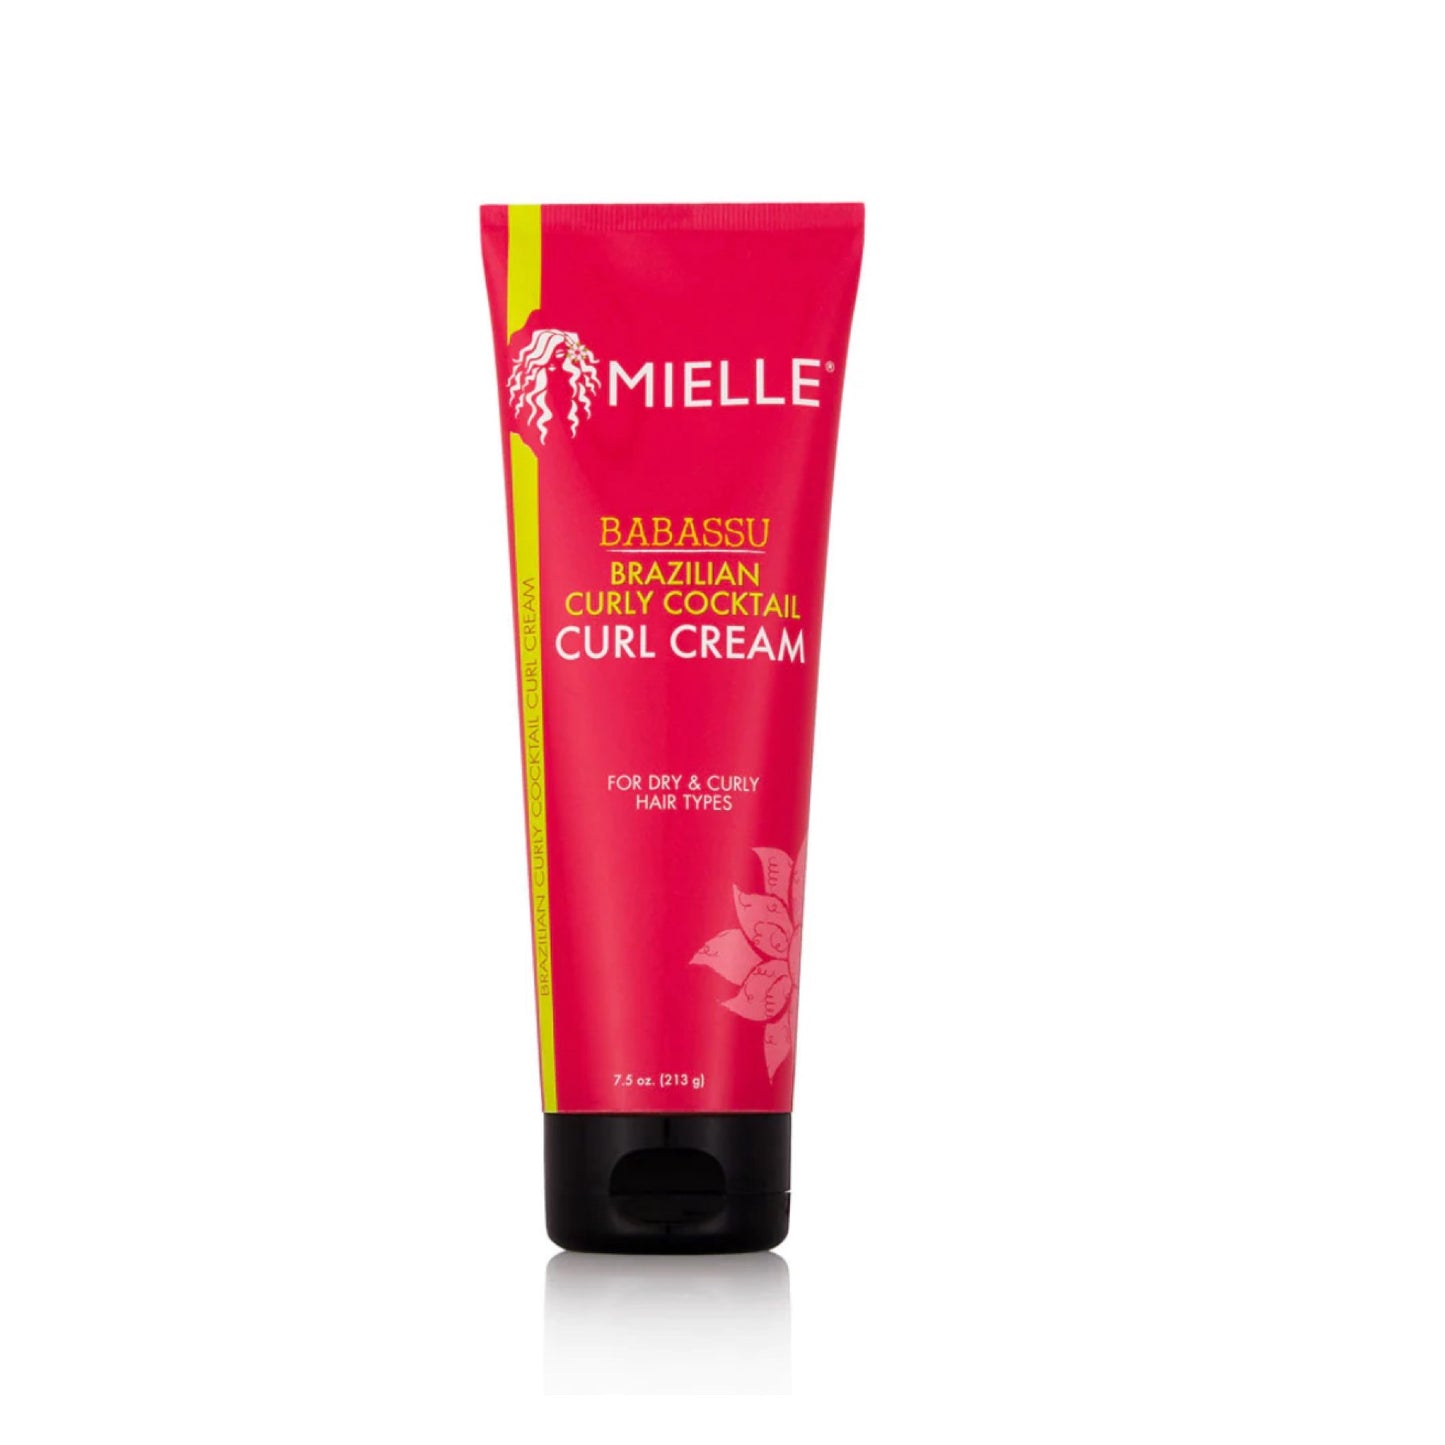 Mielle Organics Brazilian Curly Cocktail Curl Cream